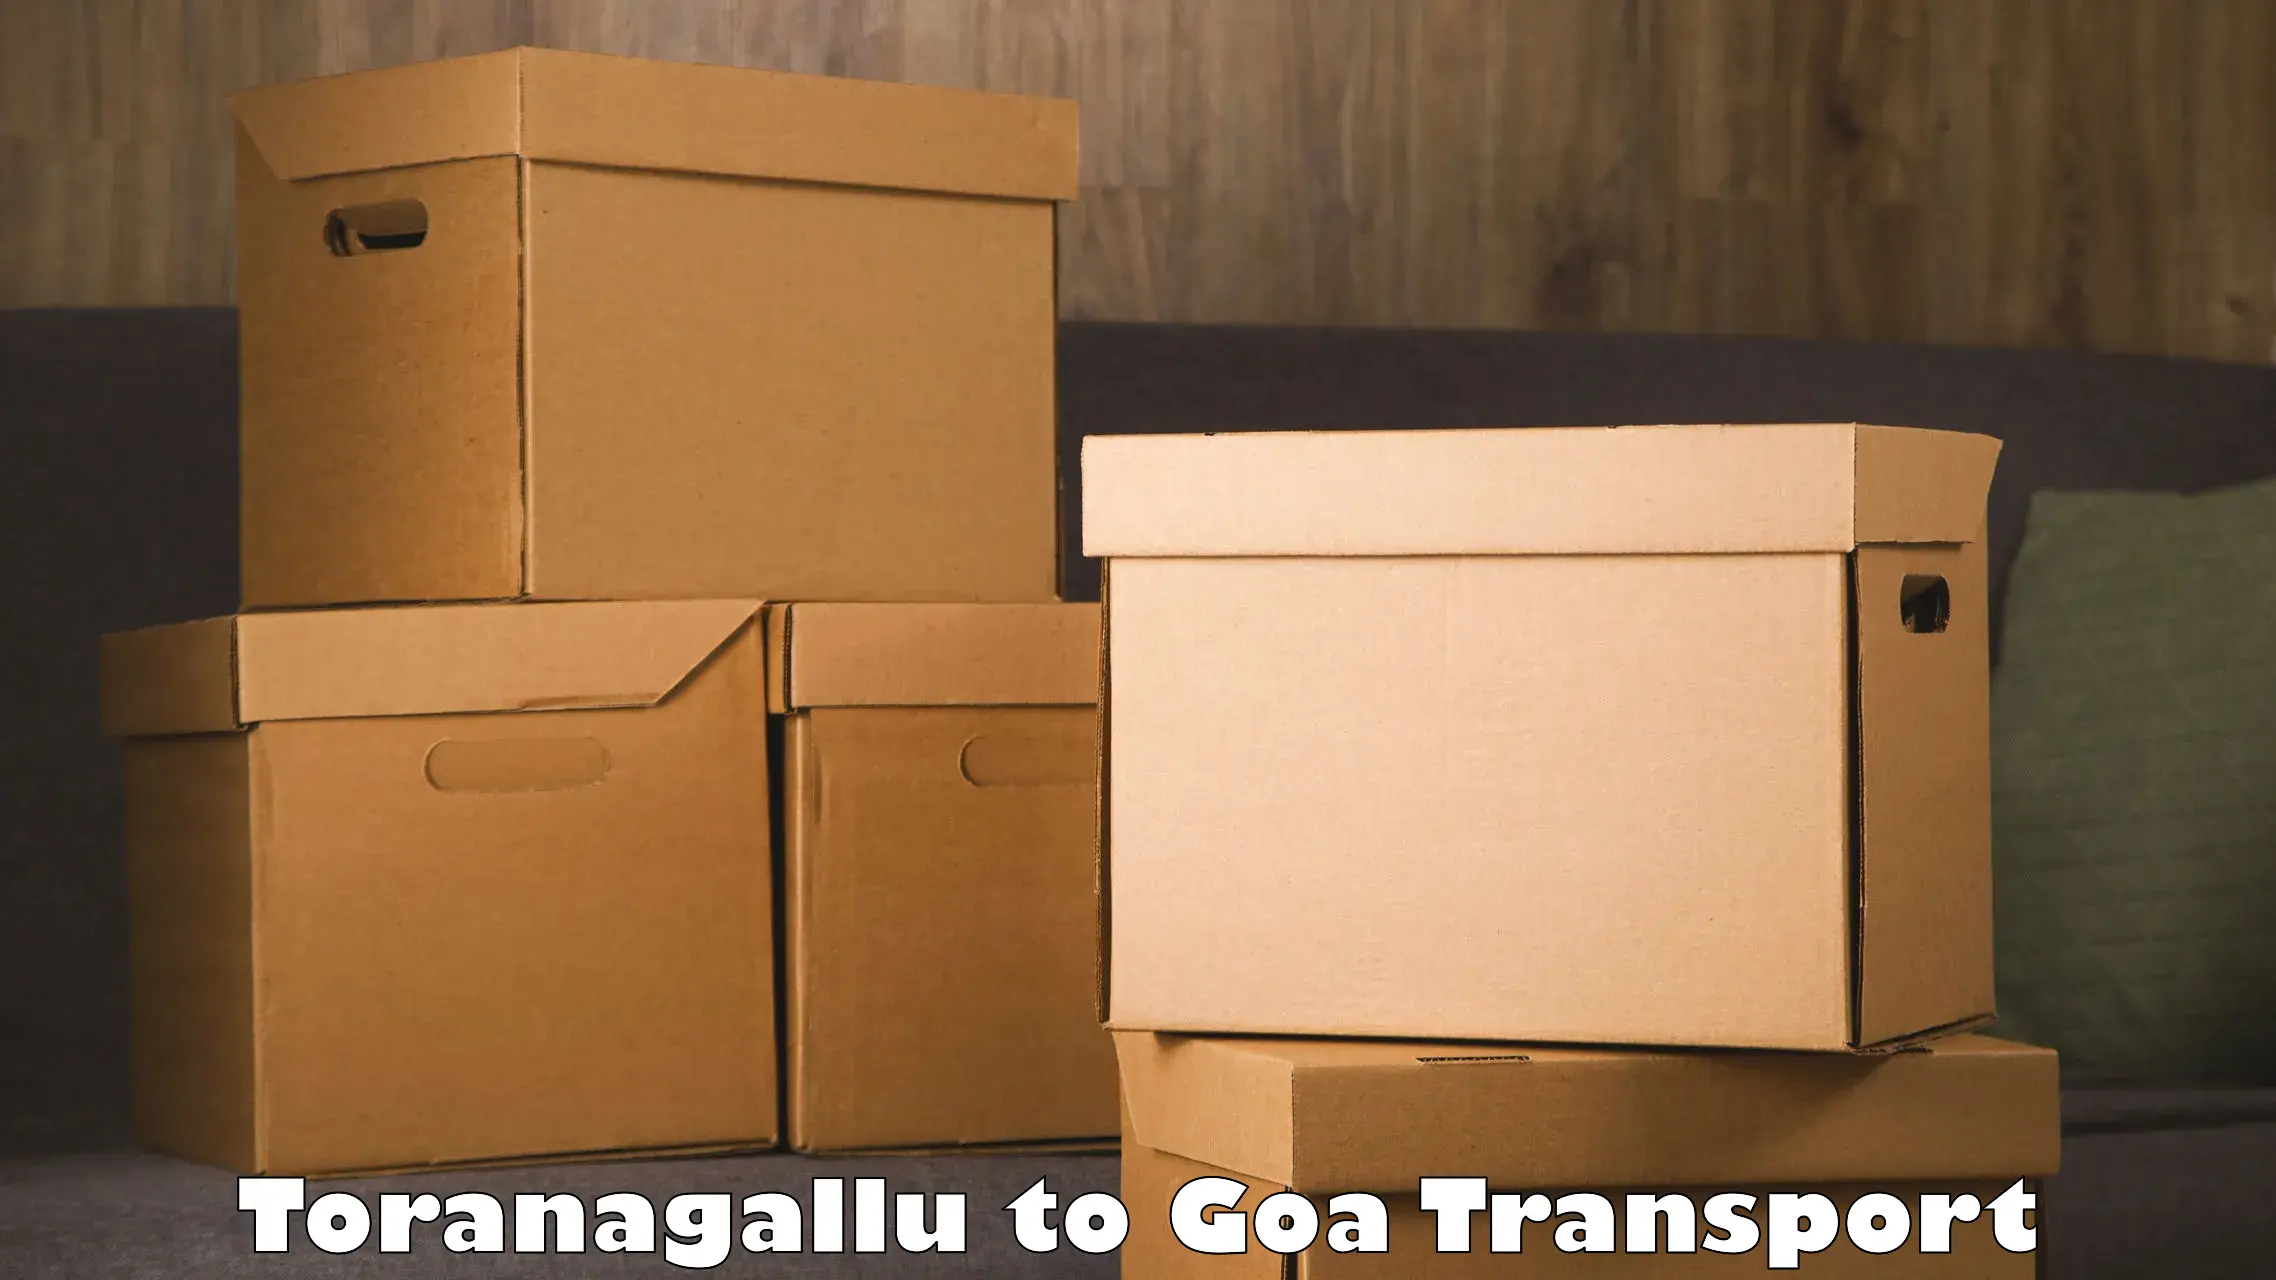 Transport in sharing in Toranagallu to Goa